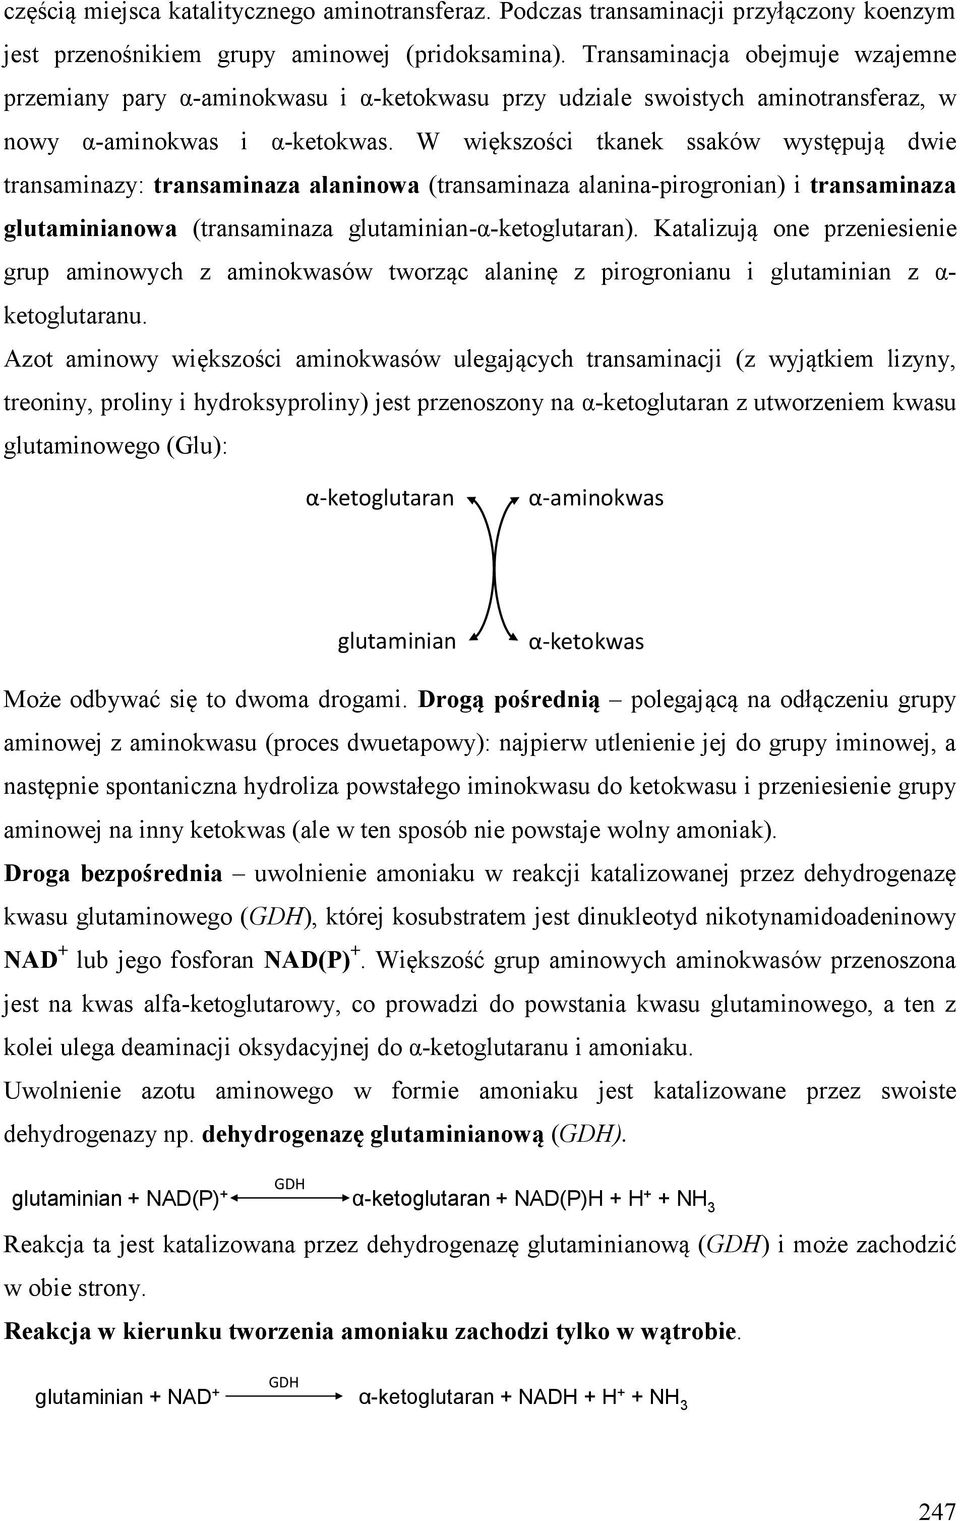 W większości tkanek ssaków występują dwie transaminazy: transaminaza alaninowa (transaminaza alanina-pirogronian) i transaminaza glutaminianowa (transaminaza glutaminian-α-ketoglutaran).